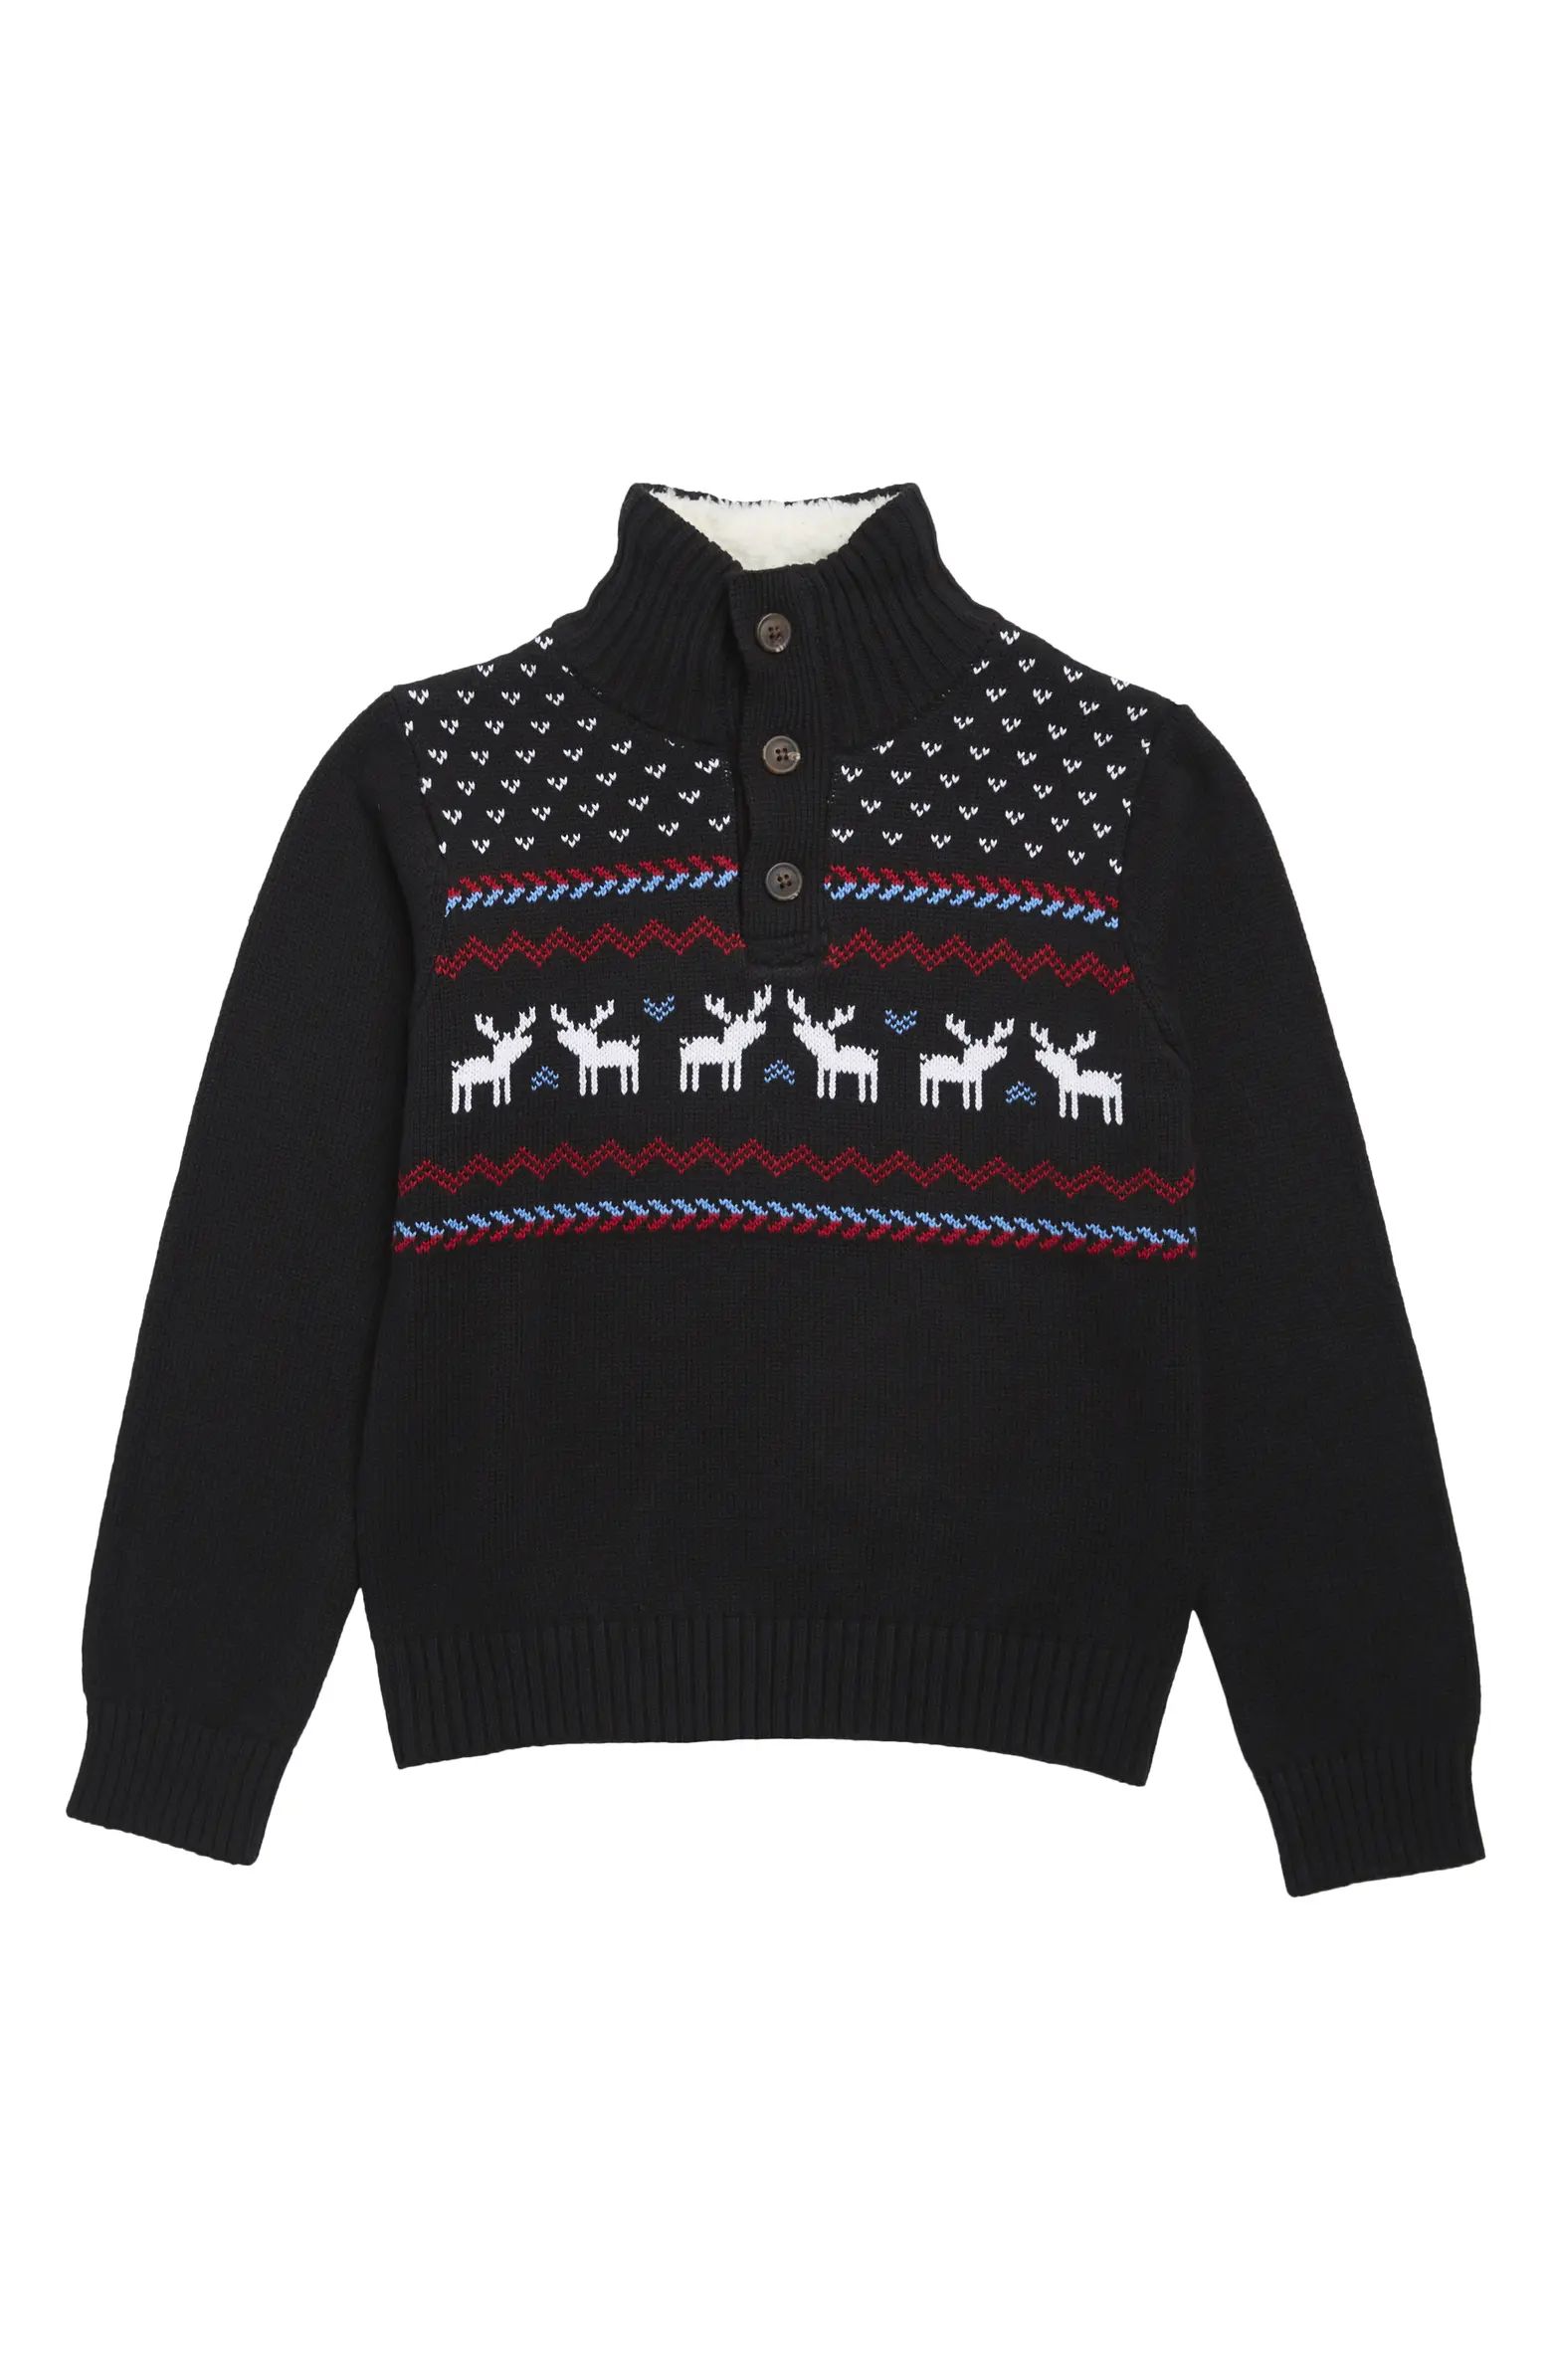 IZOD KIDS Kids' Reindeer Fair Isle Faux Shearling Cotton Sweater | Nordstromrack | Nordstrom Rack